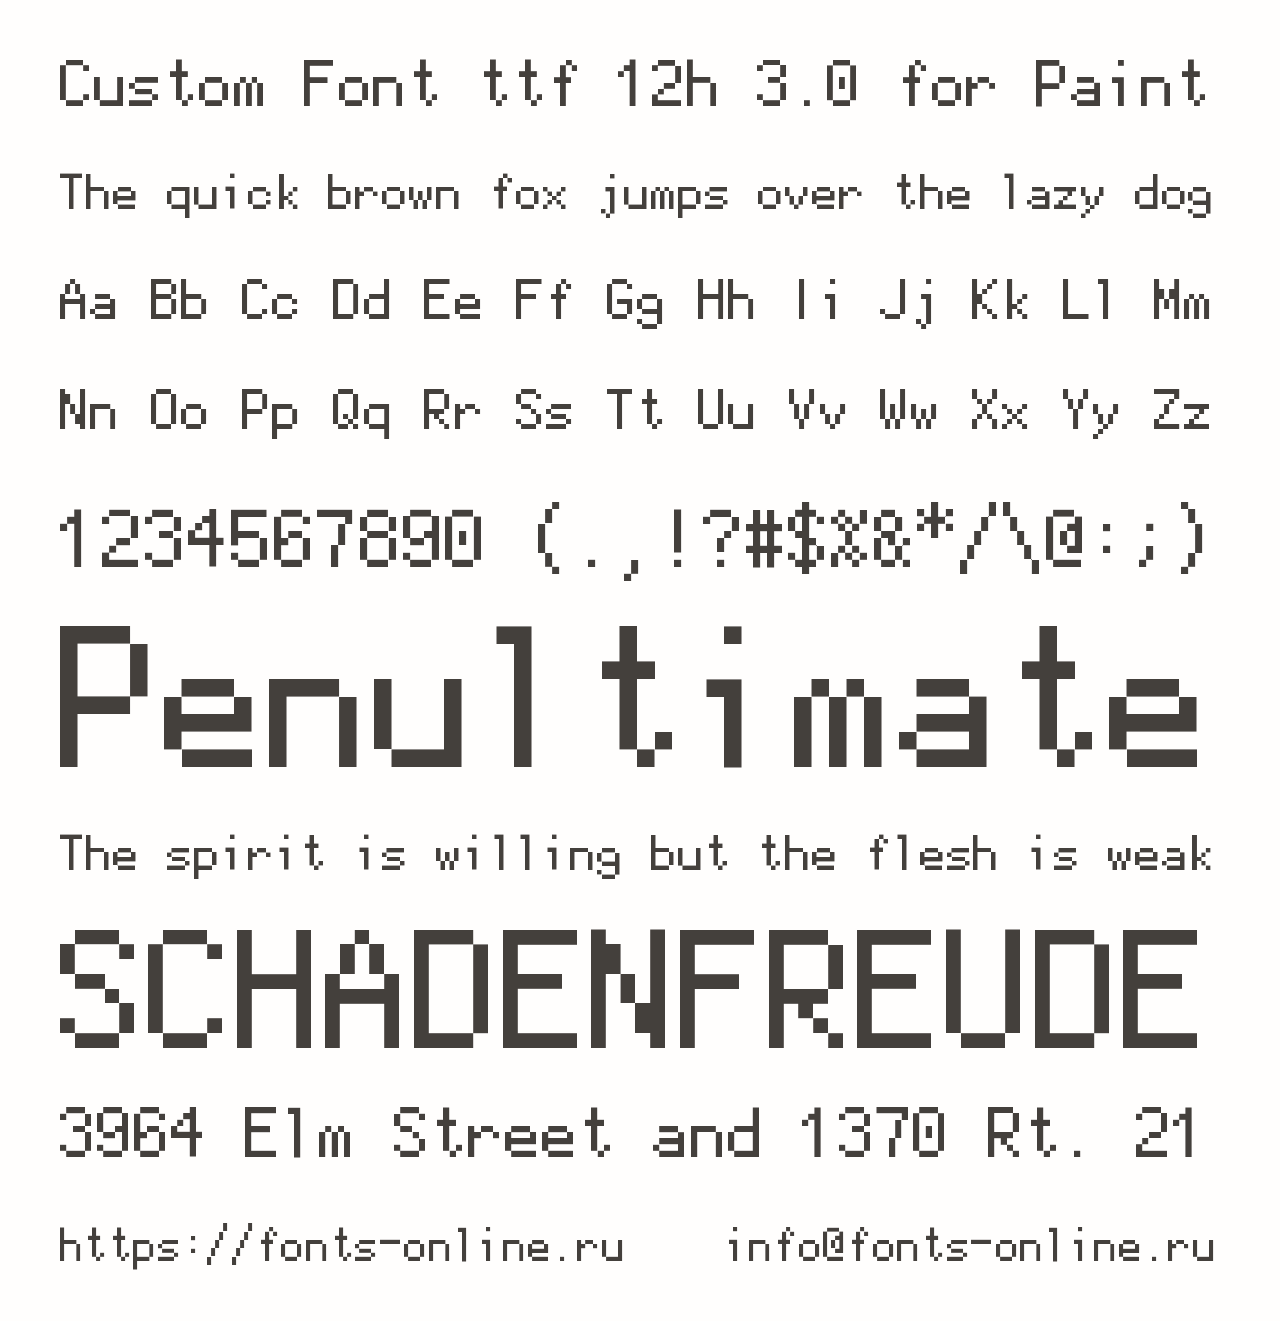 Шрифт Custom Font ttf 12h 3.0 for Paint